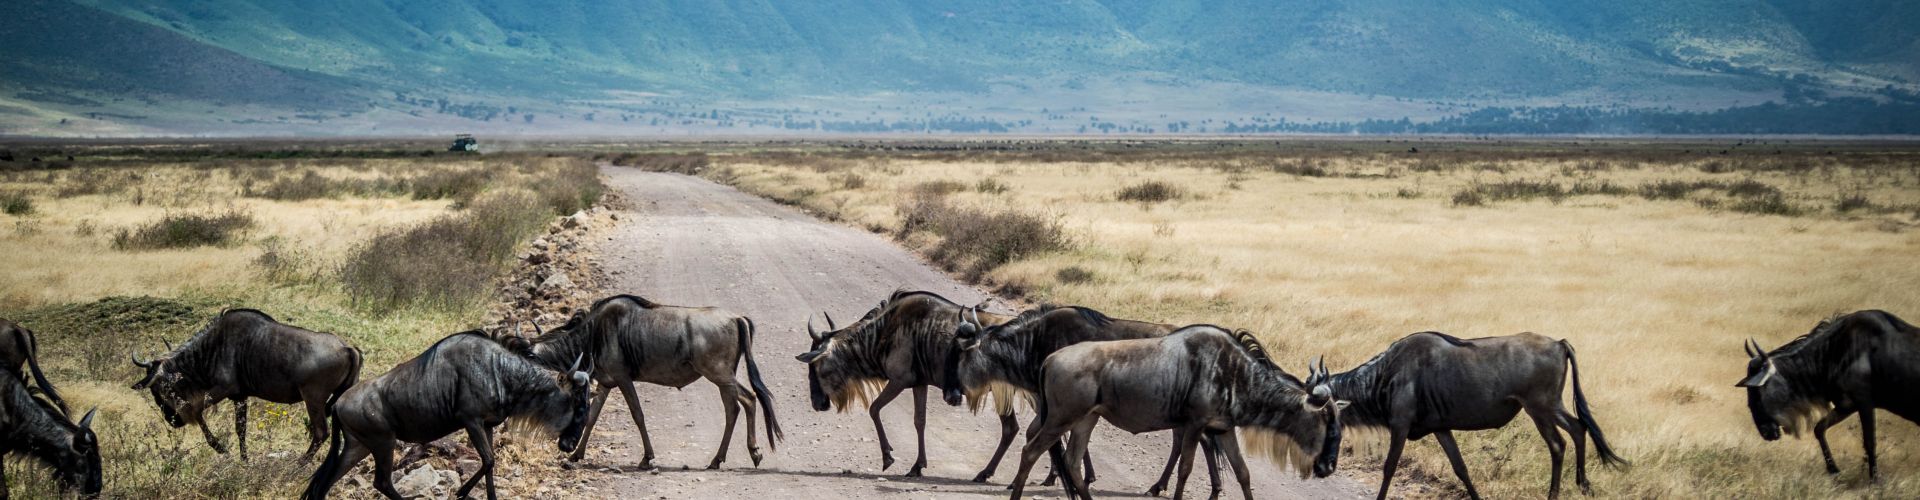 Les gnous ont le droit de passage dans le cratère du Ngorongoro